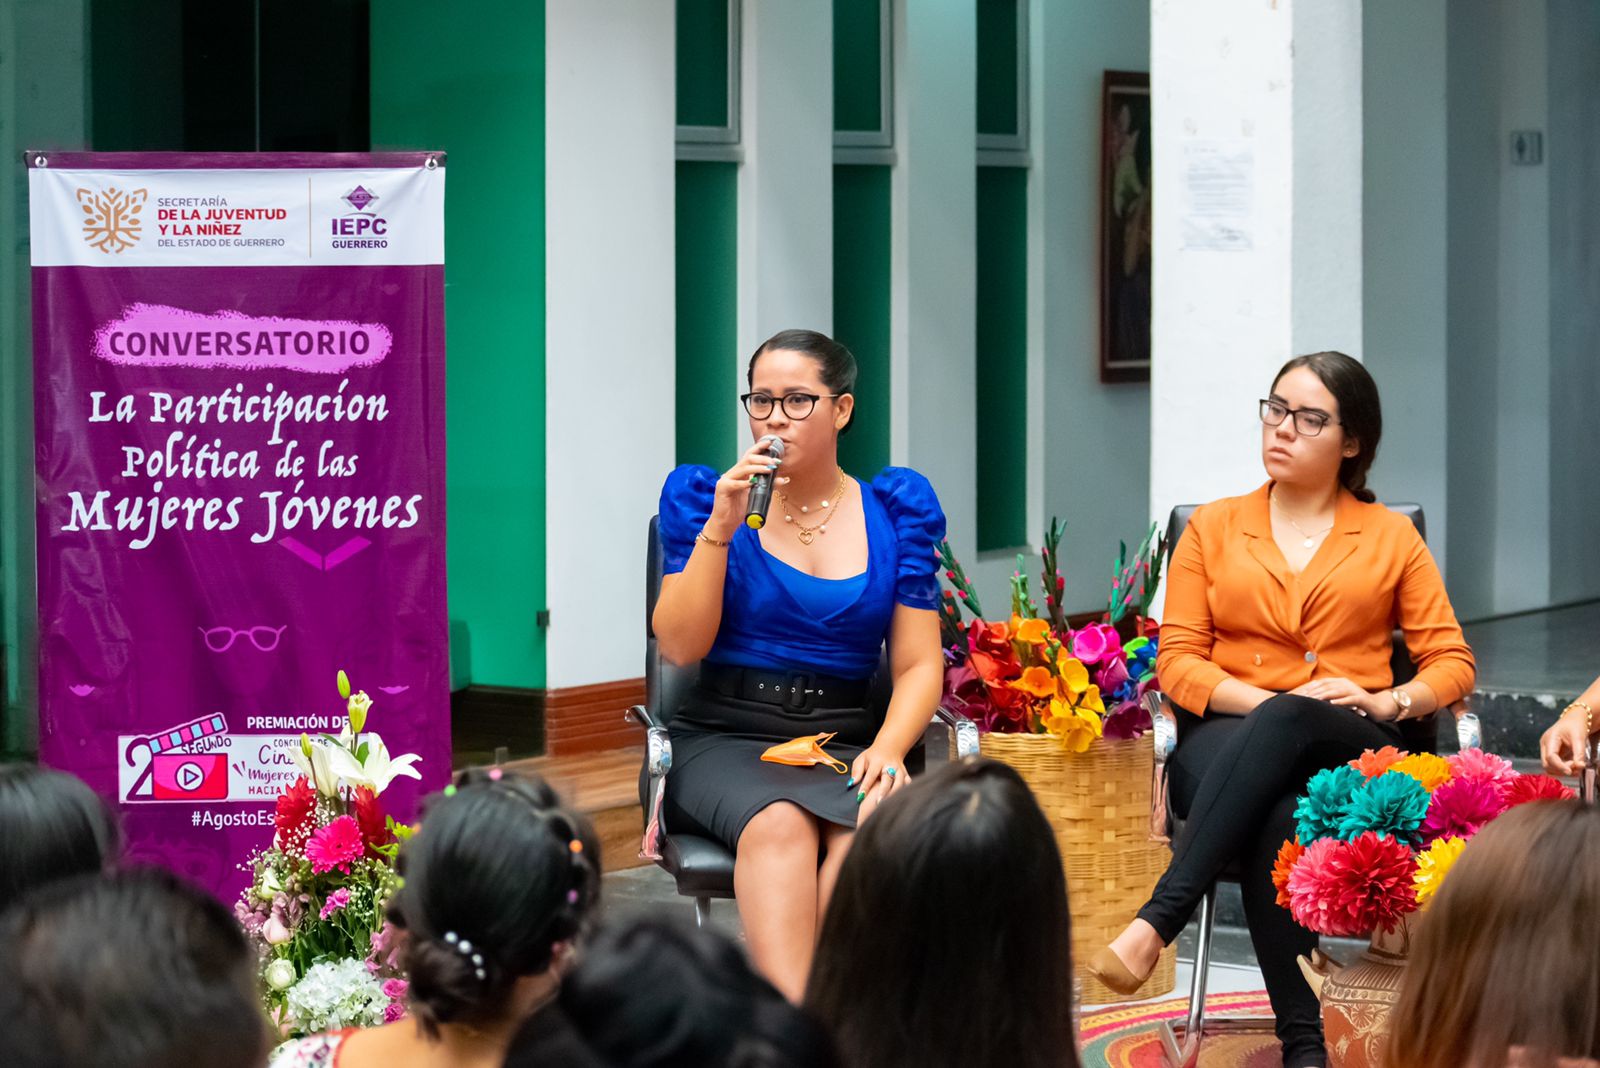 Sejuve e IEyPC organizaron un conversatorio con mujeres jóvenes en el marco de la conmemoración del Día Naranja